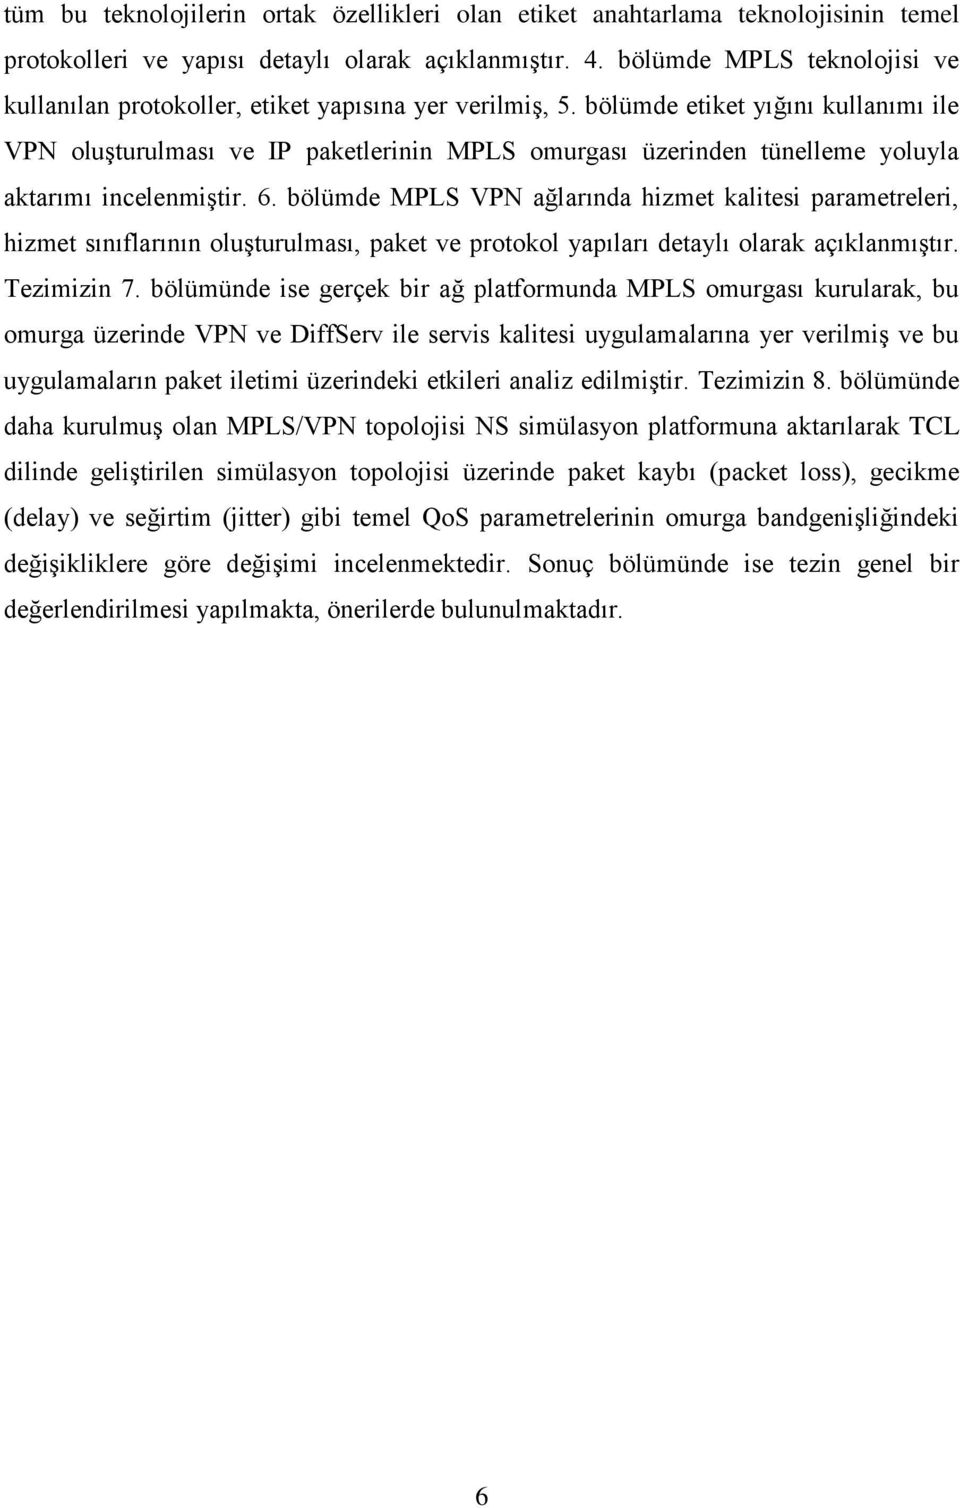 bölümde etiket yığını kullanımı ile VPN oluģturulması ve IP paketlerinin MPLS omurgası üzerinden tünelleme yoluyla aktarımı incelenmiģtir. 6.